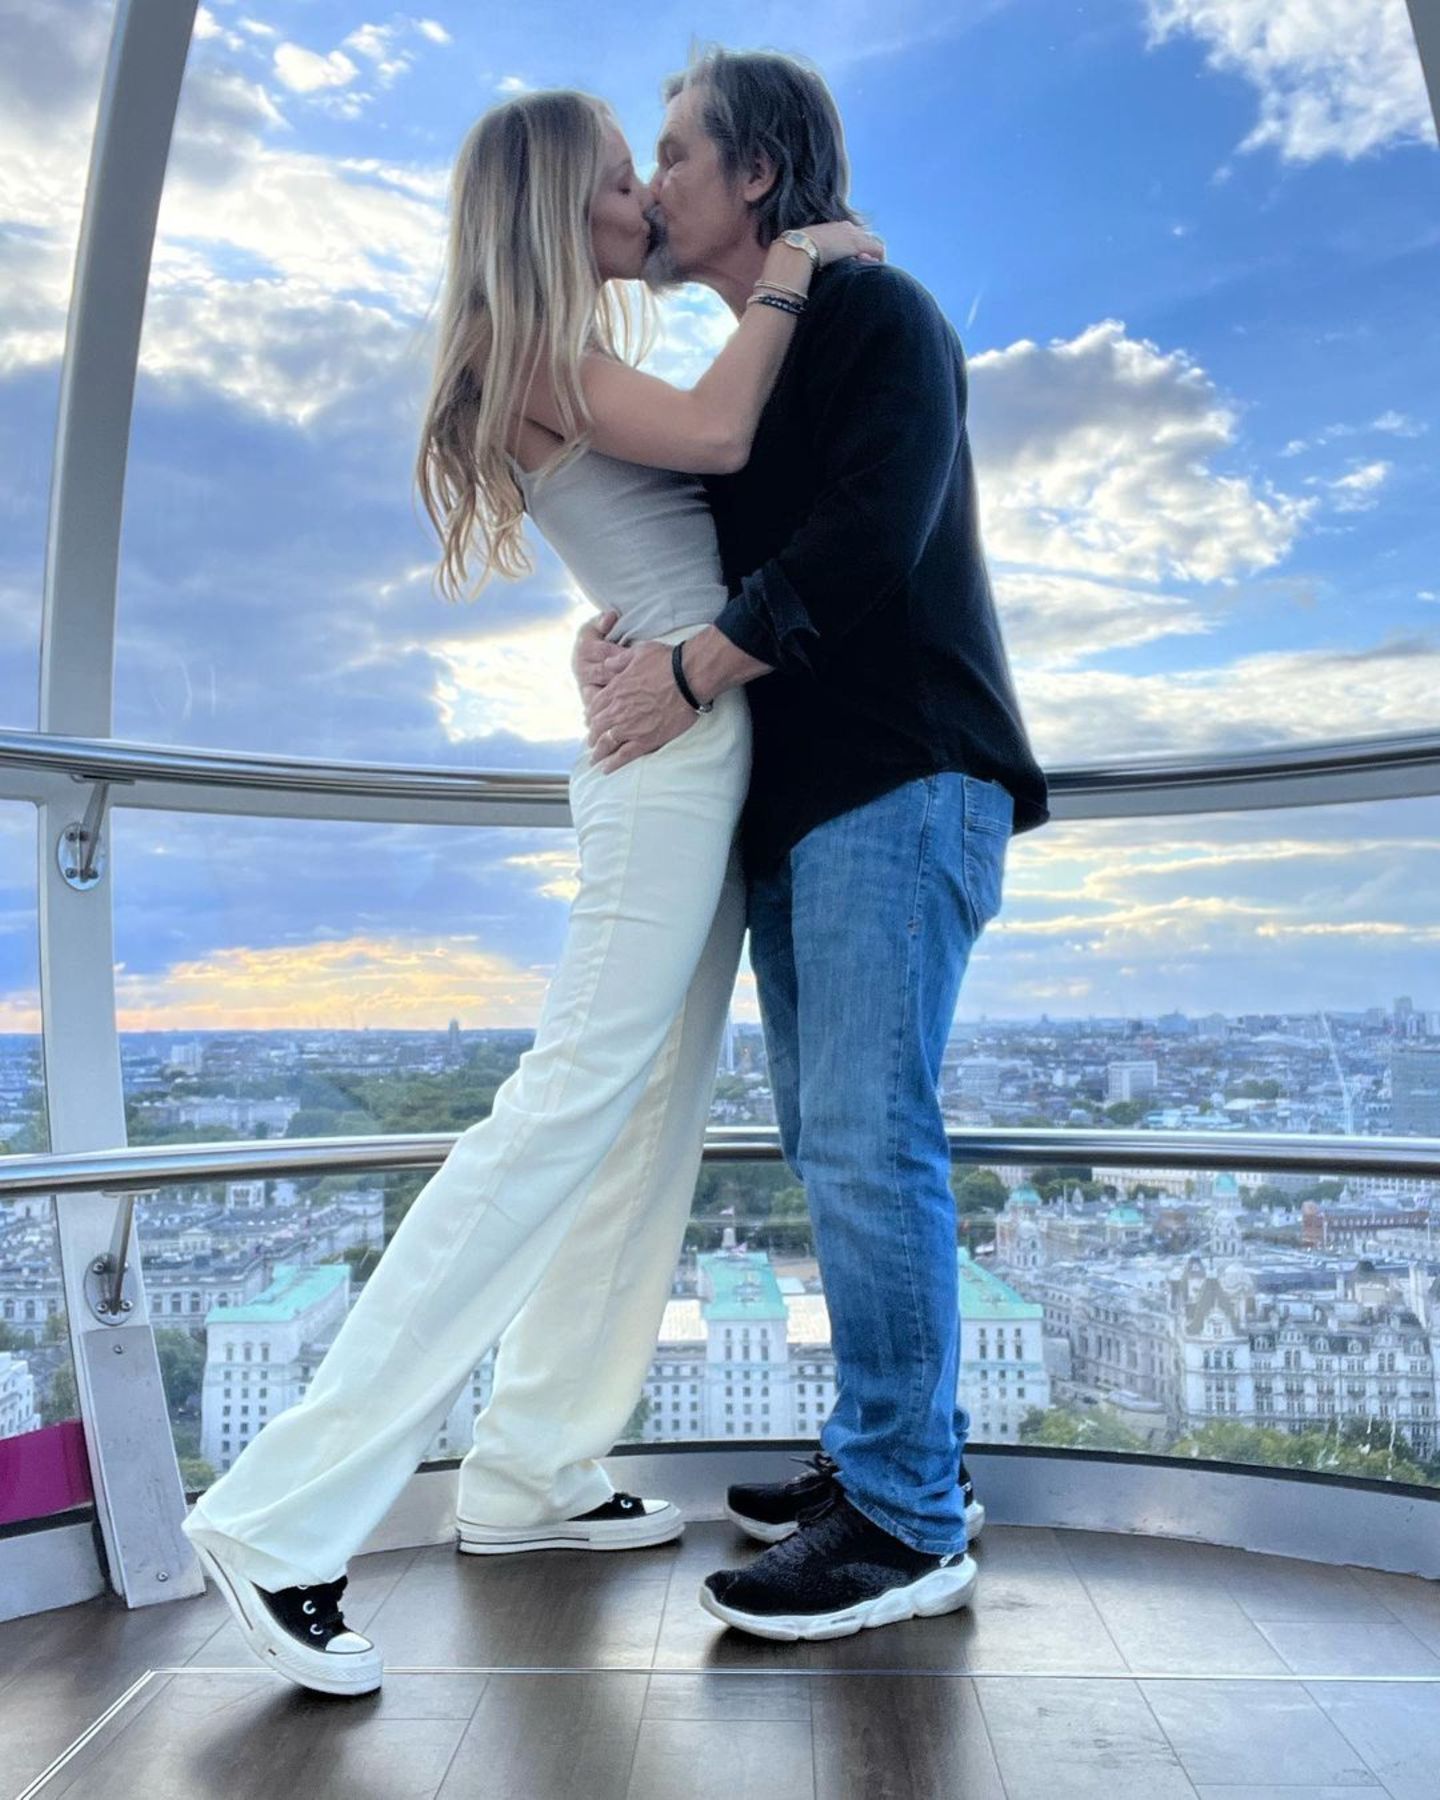 6 Jahre! Am 24. September 2016 heirateten Kathryn Boyd und Josh Brolin, nun beginnt für das Paar das 7. Jahr mit einem ganz dicken Kuss im "London Eye", dem größten Riesenrad Europas hoch über den Dächern der Metropole. Wir gratulieren und wünschen den Brolins, dass es kein verflixtes wird.